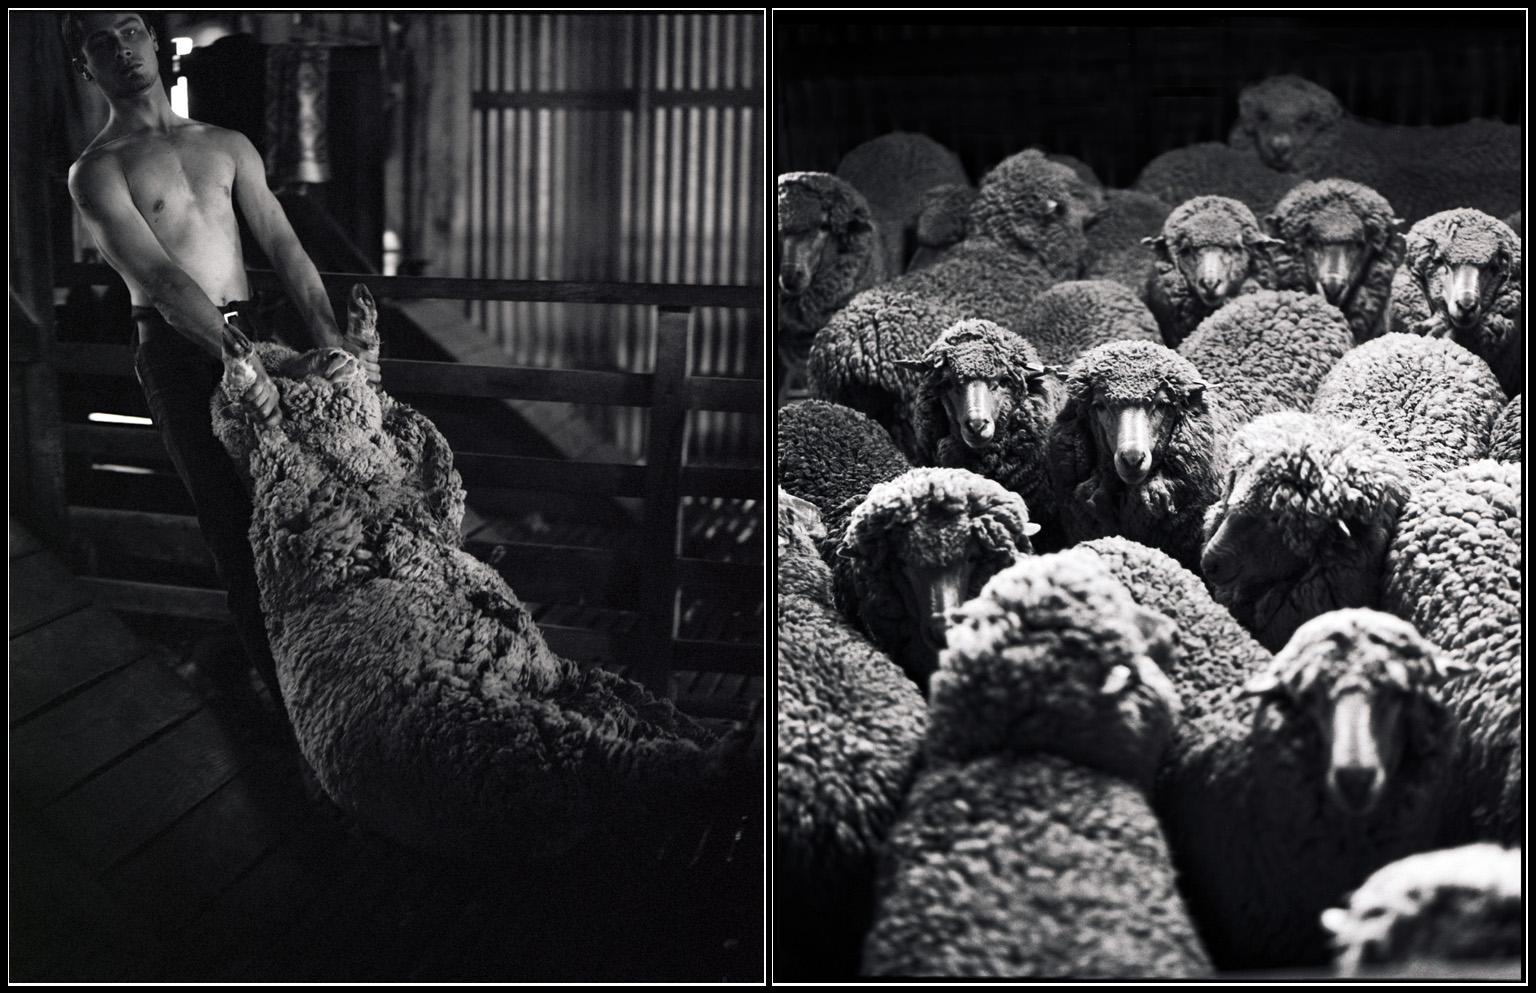 sheepshearing.jpg